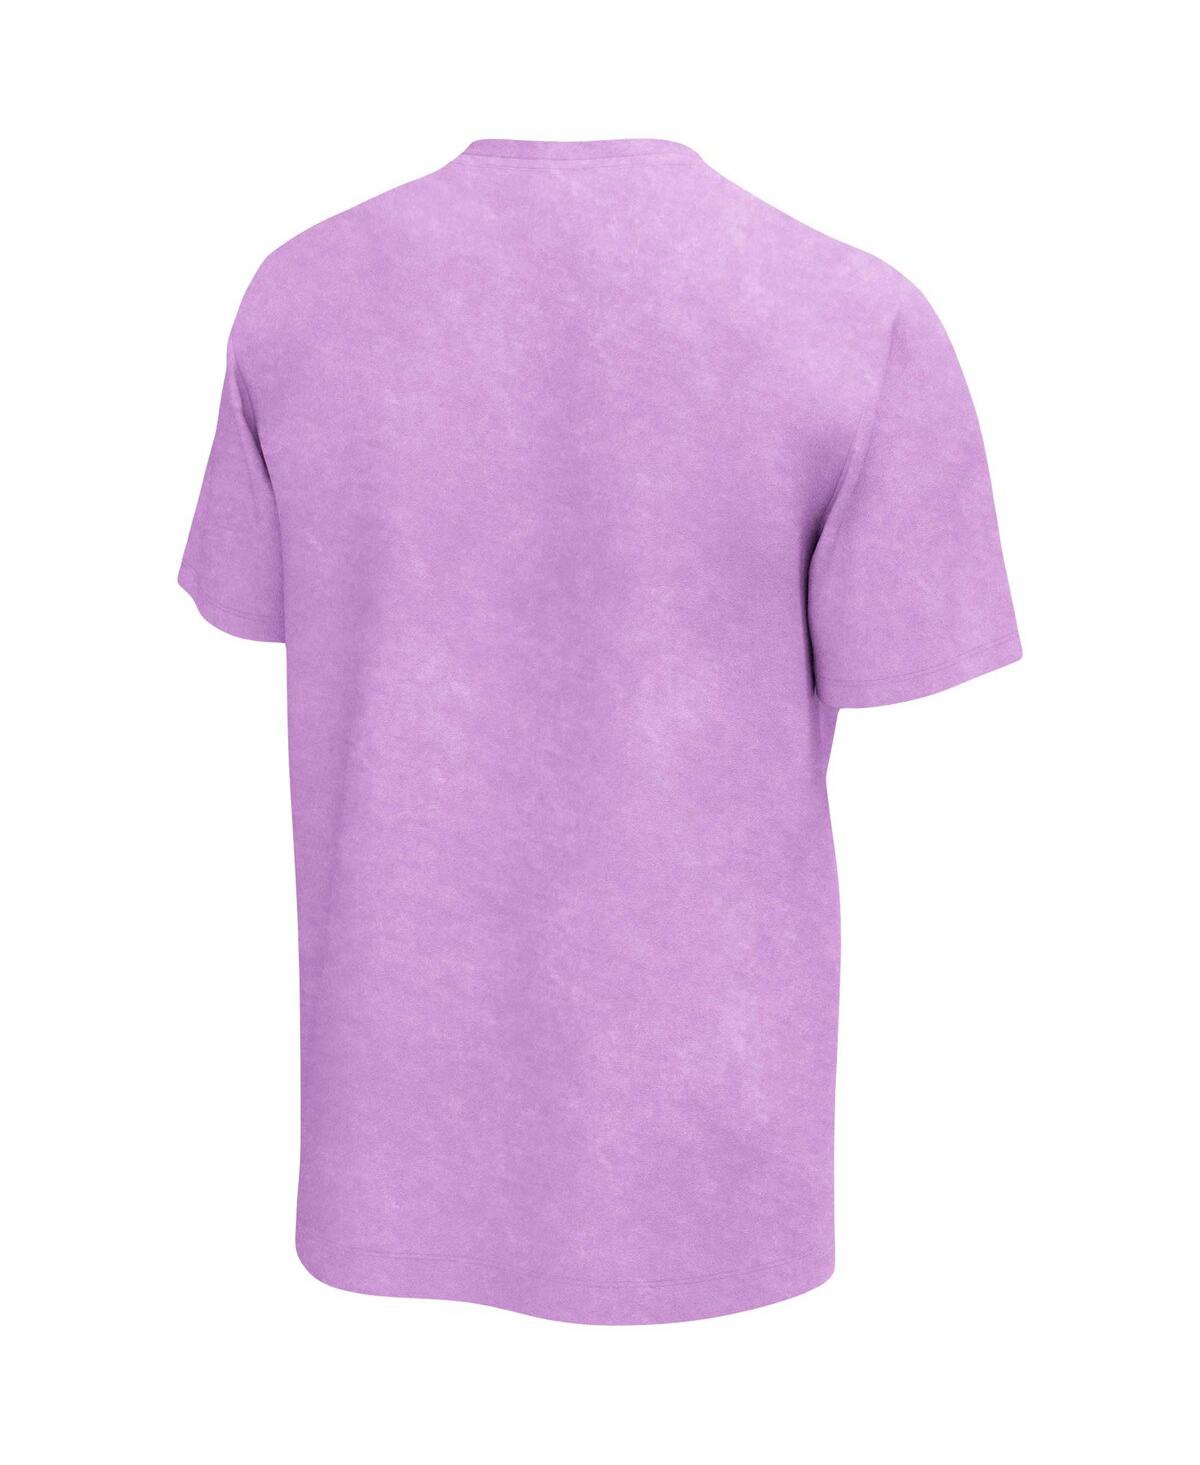 Shop Philcos Men's Rupaul Purple Washed T-shirt